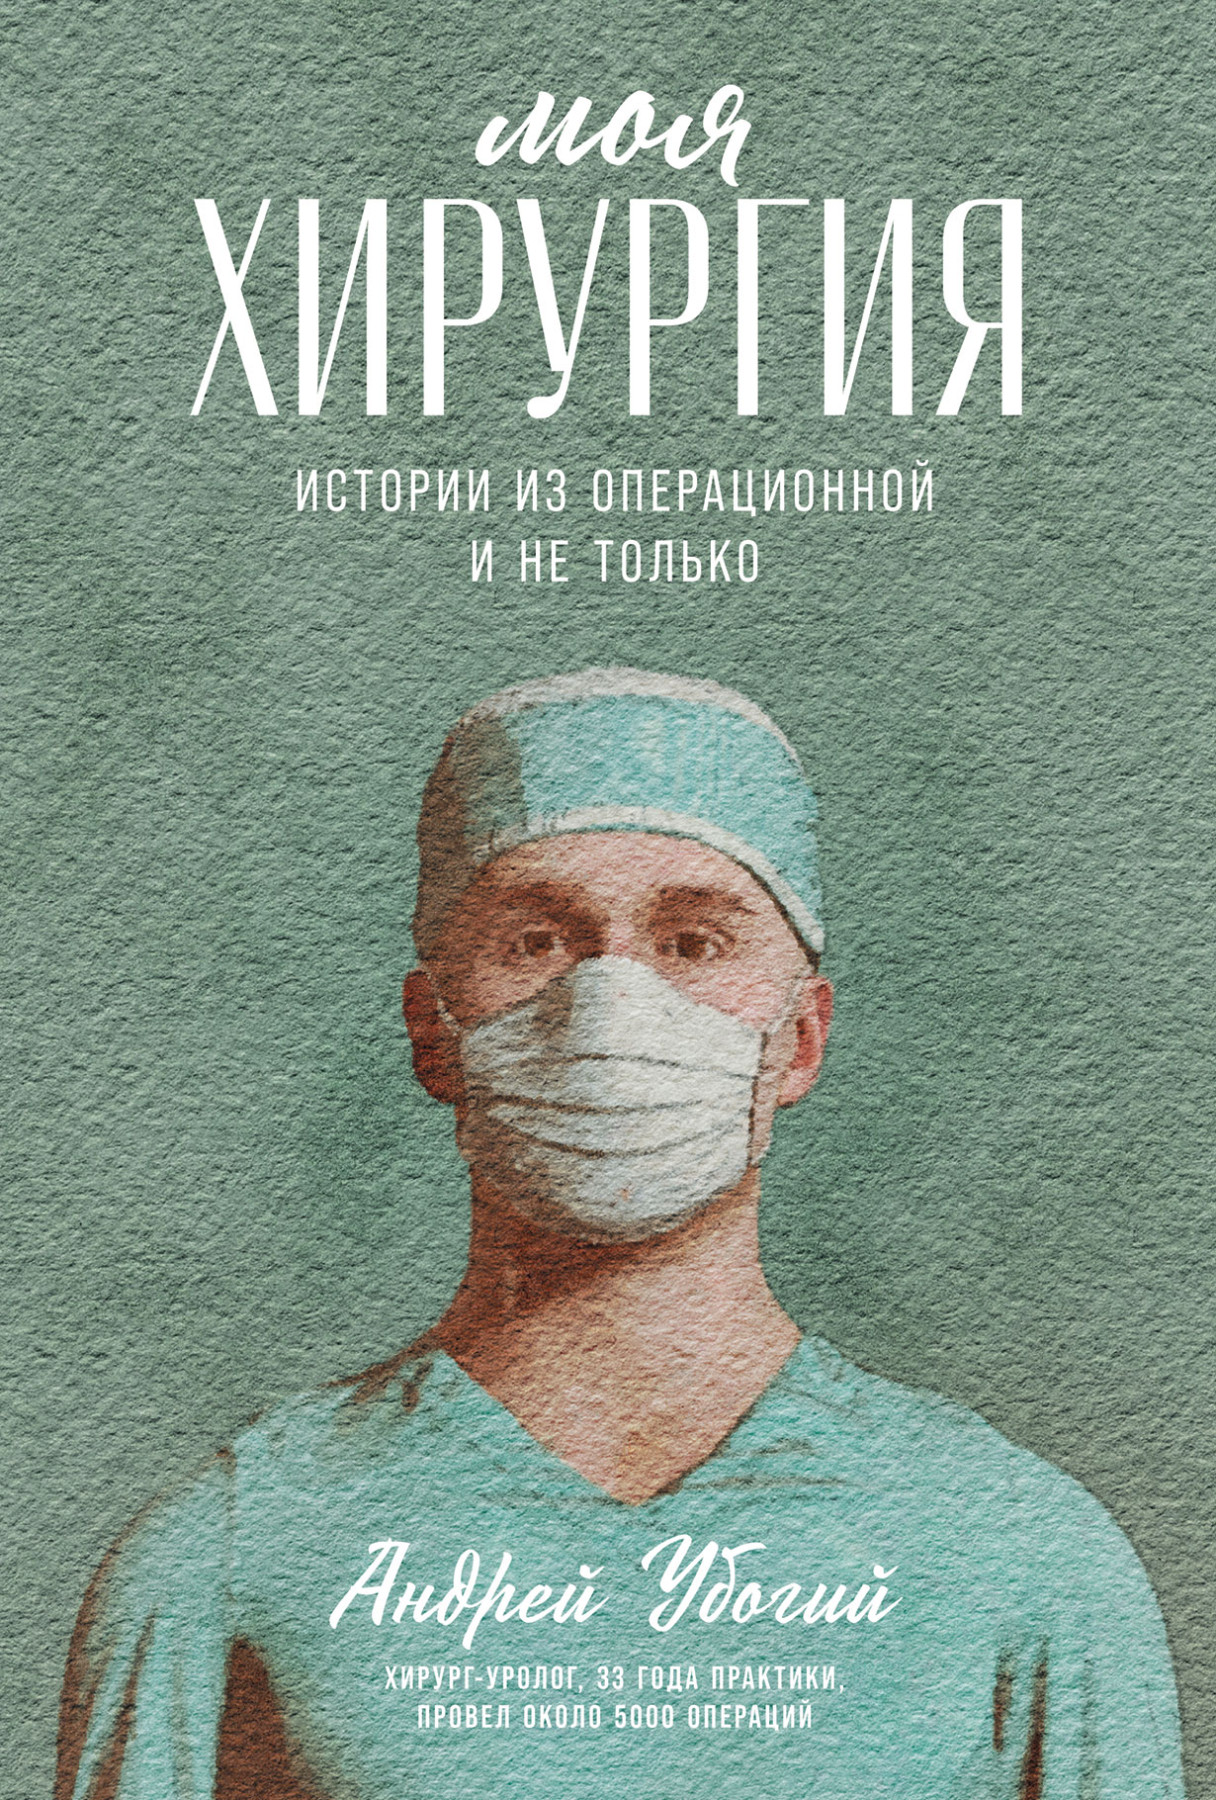 Моя хирургия обложка.